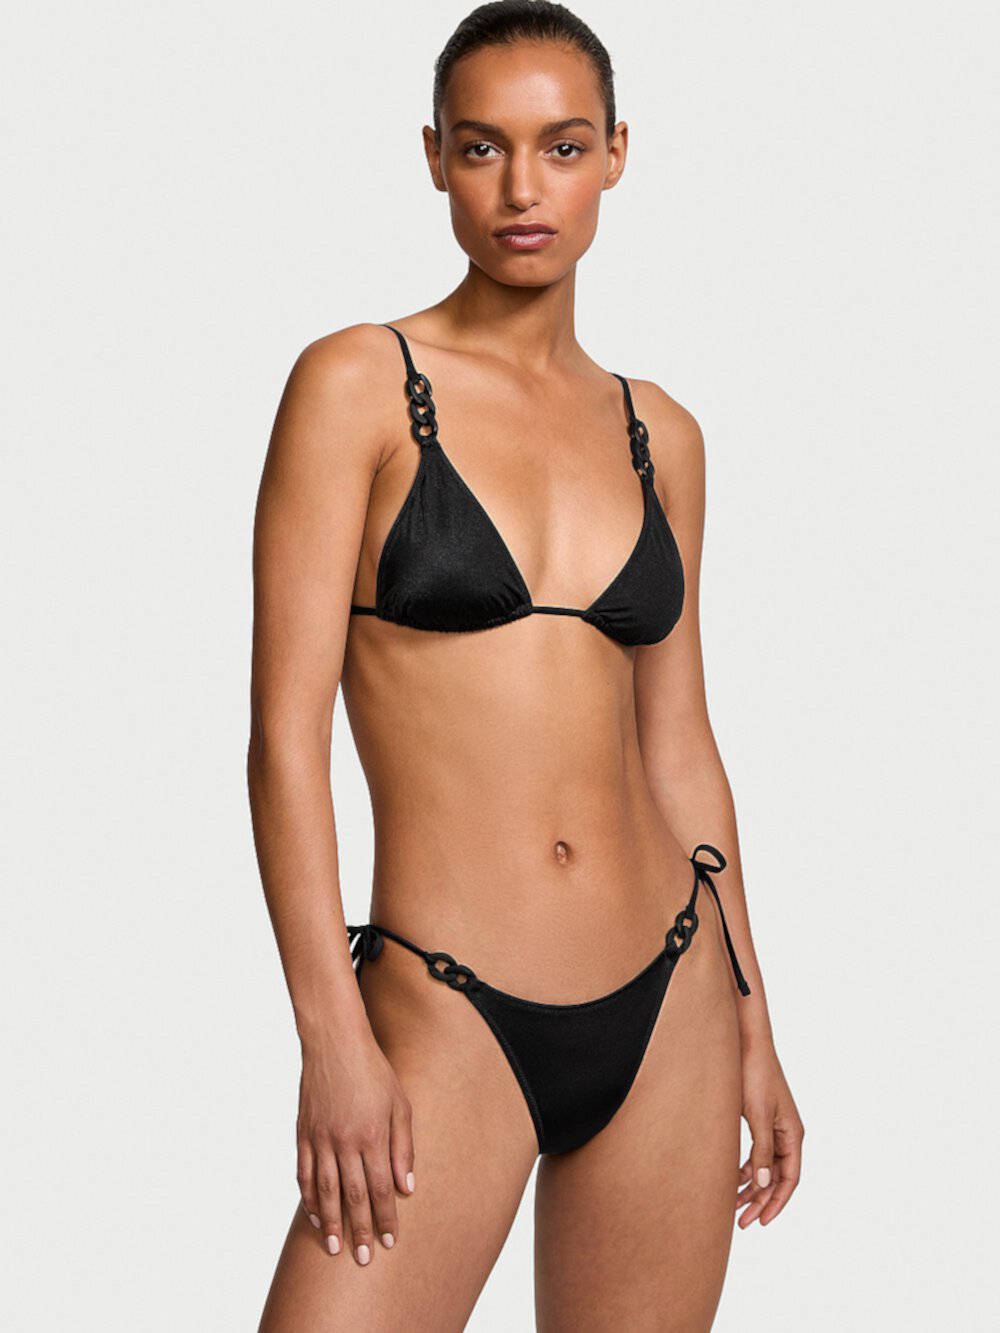 New Style! Chain-Link Triangle Bikini Top Victoria's Secret Swim